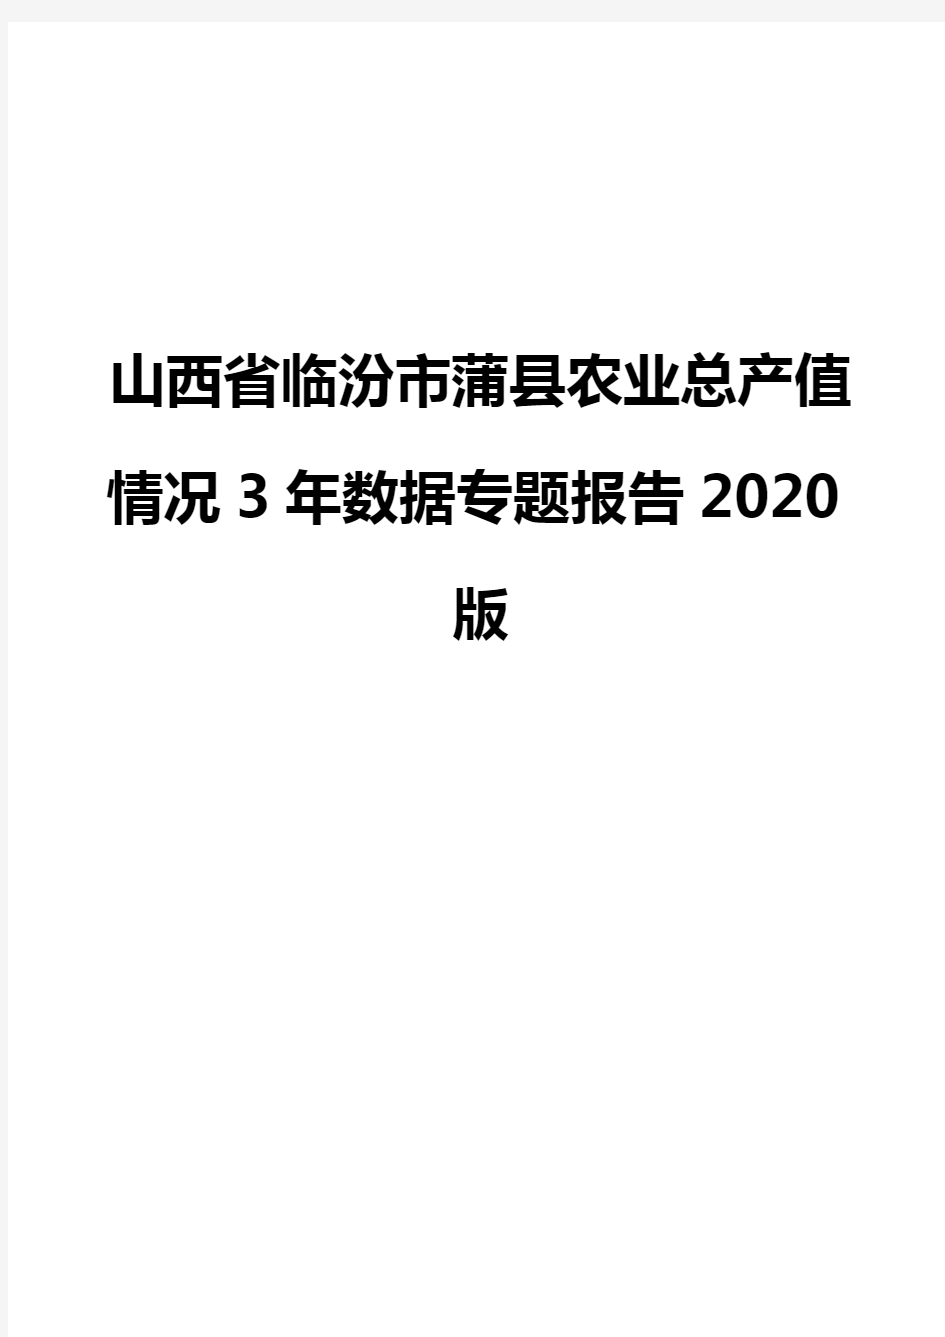 山西省临汾市蒲县农业总产值情况3年数据专题报告2020版